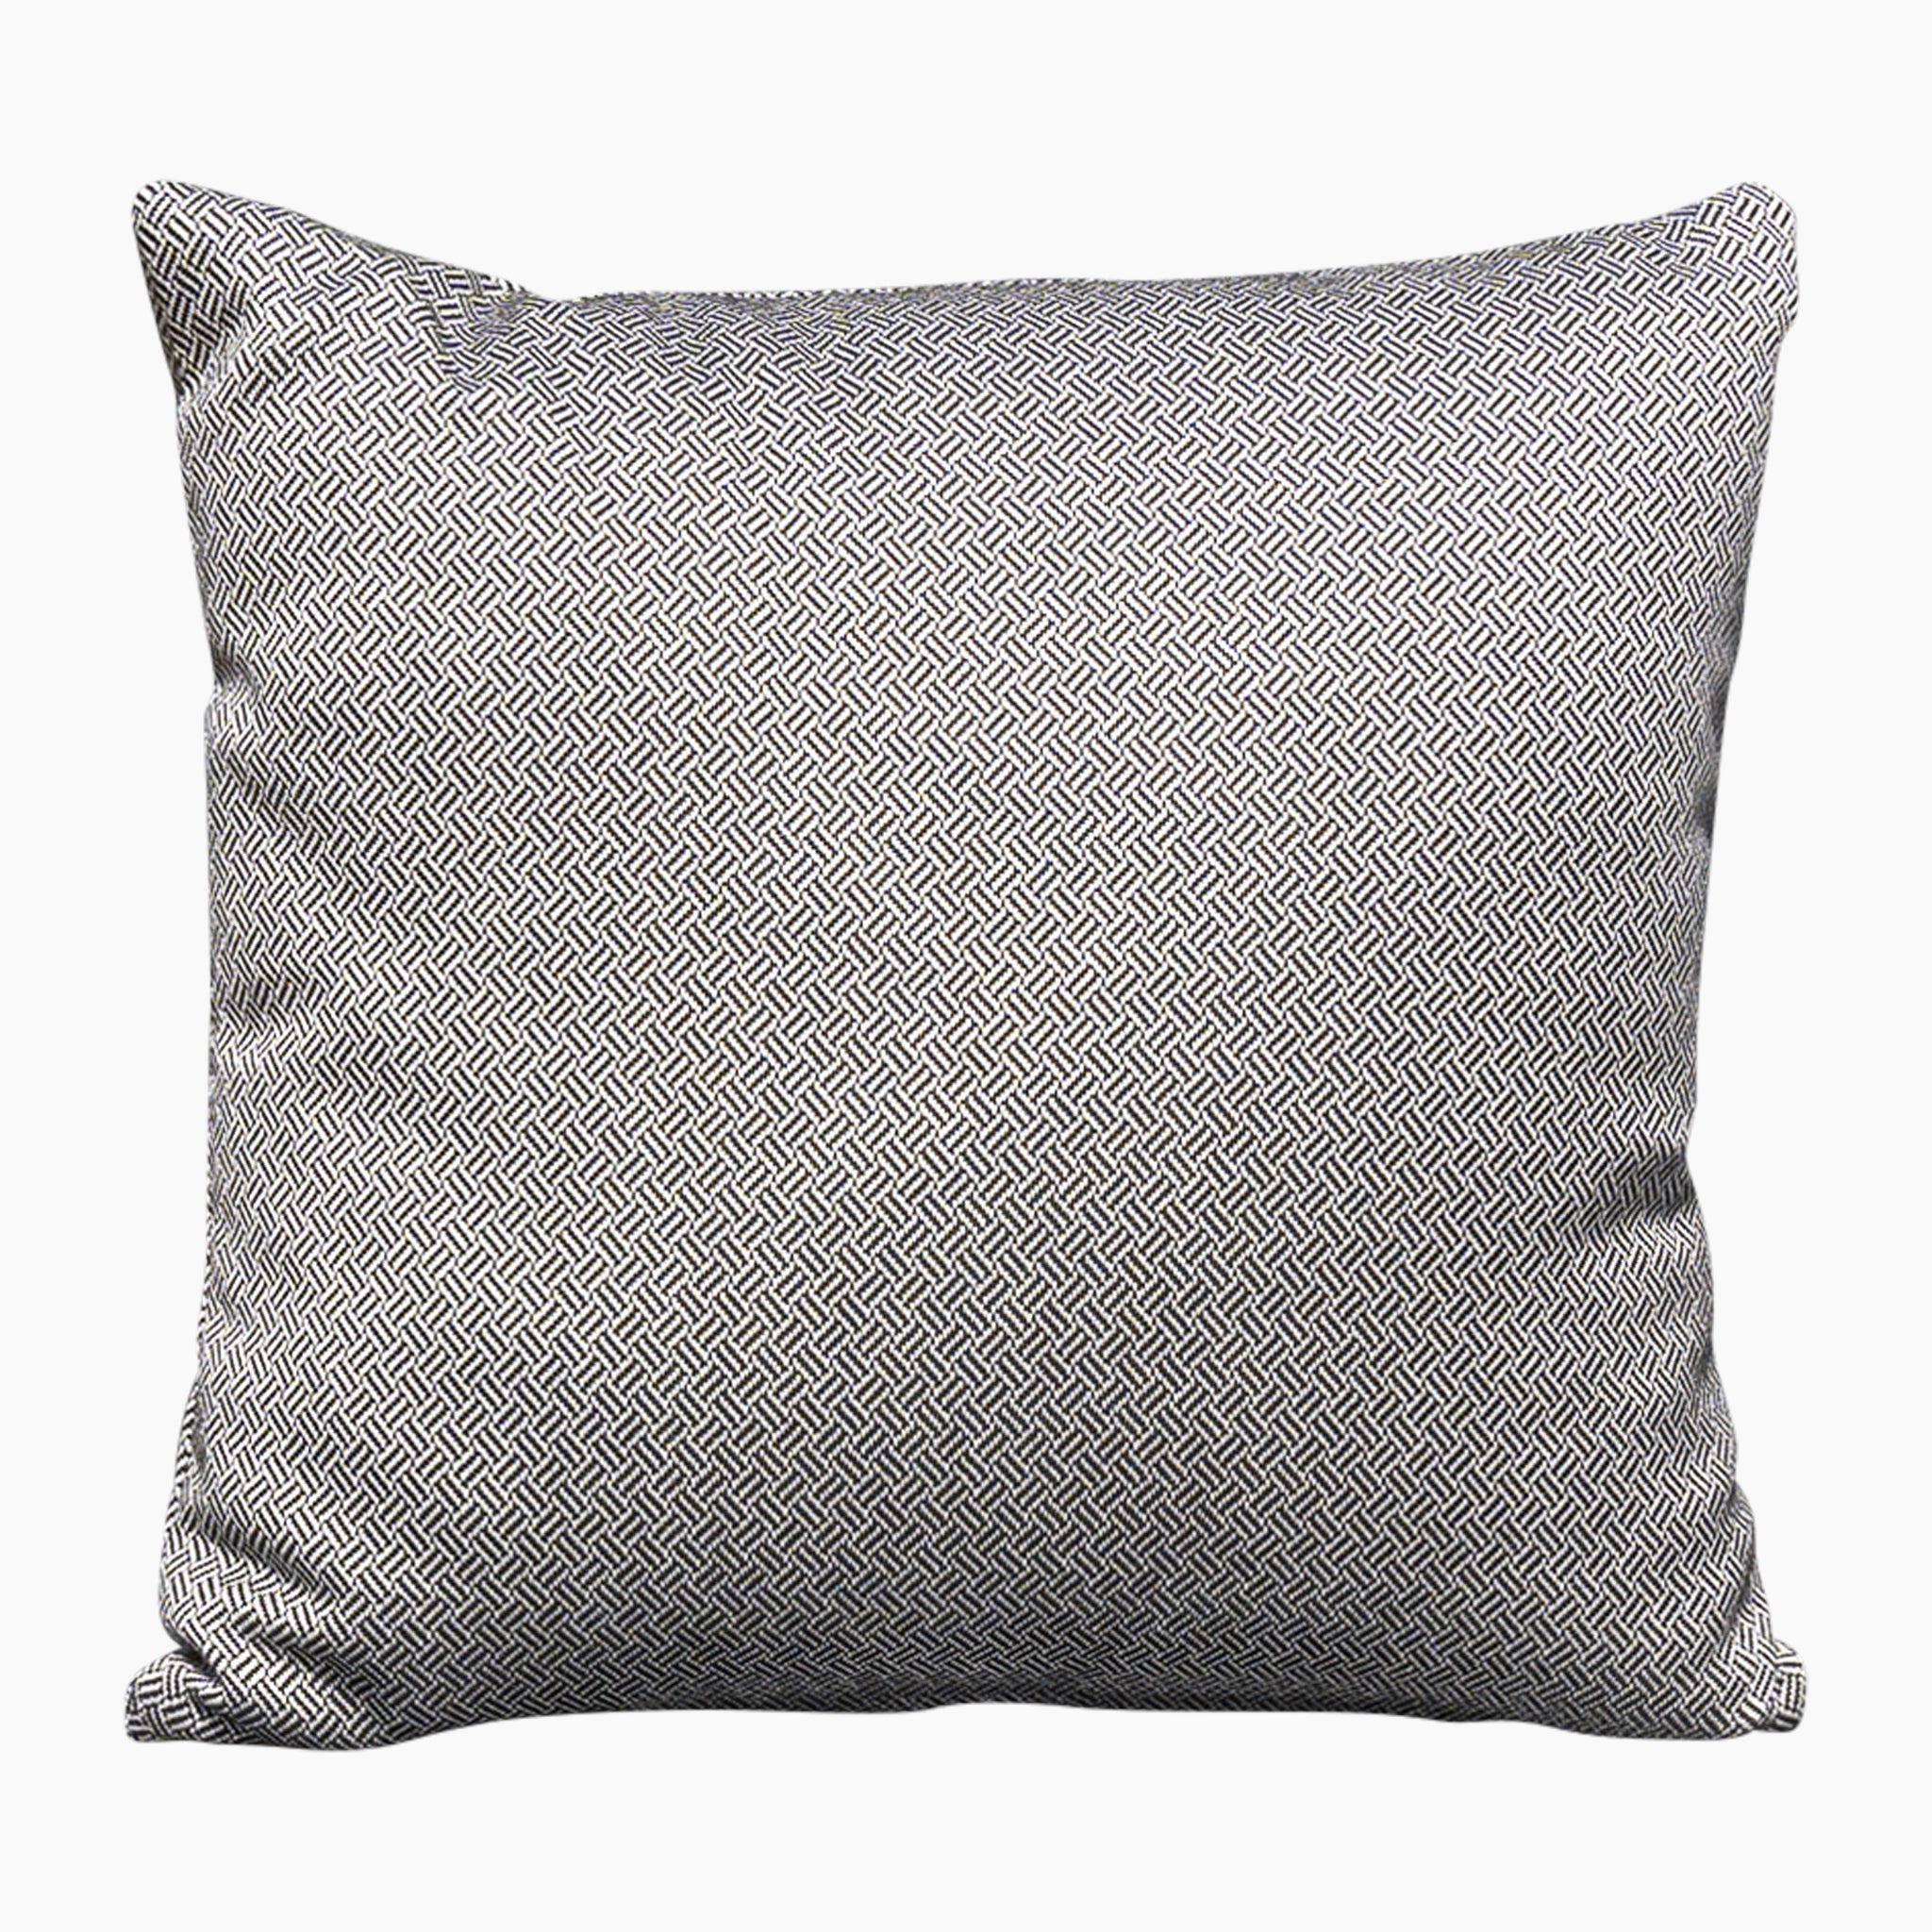 Agora Vimini Pirita Medium Scatter Cushion - 45cm x 45cm